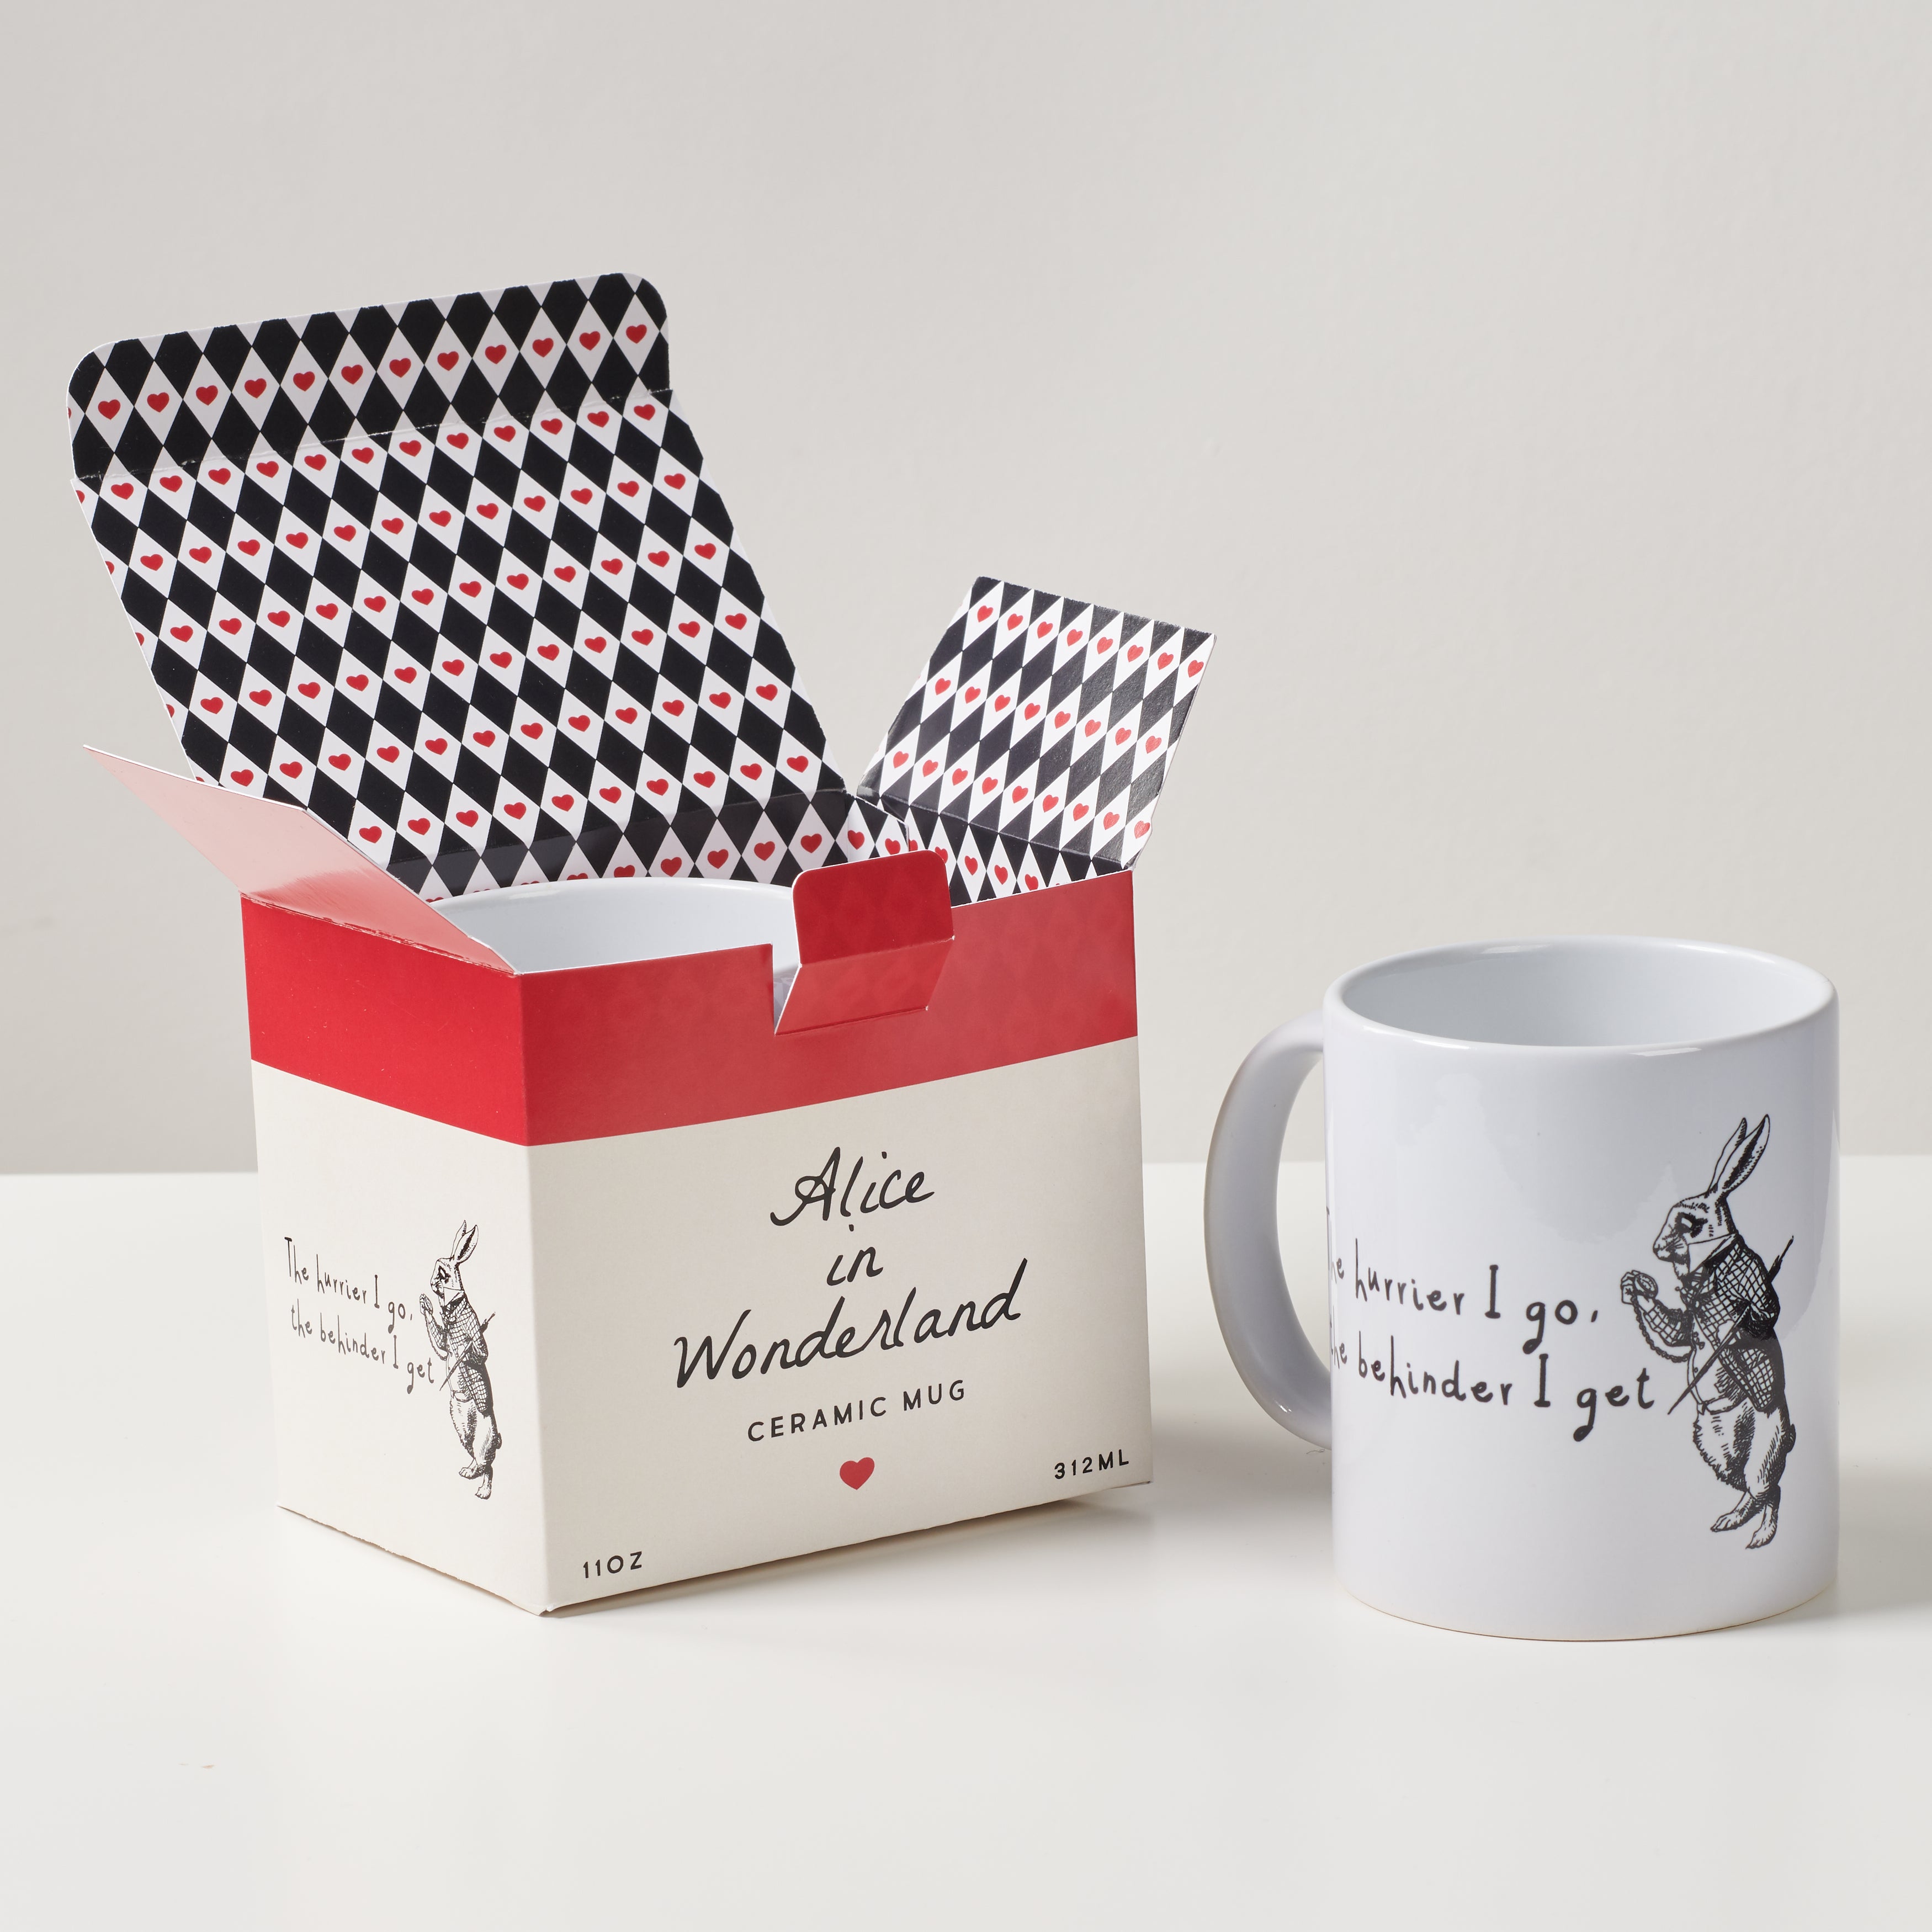 Oakdene Designs Mugs Alice In Wonderland 'The Hurrier I Go' Mug